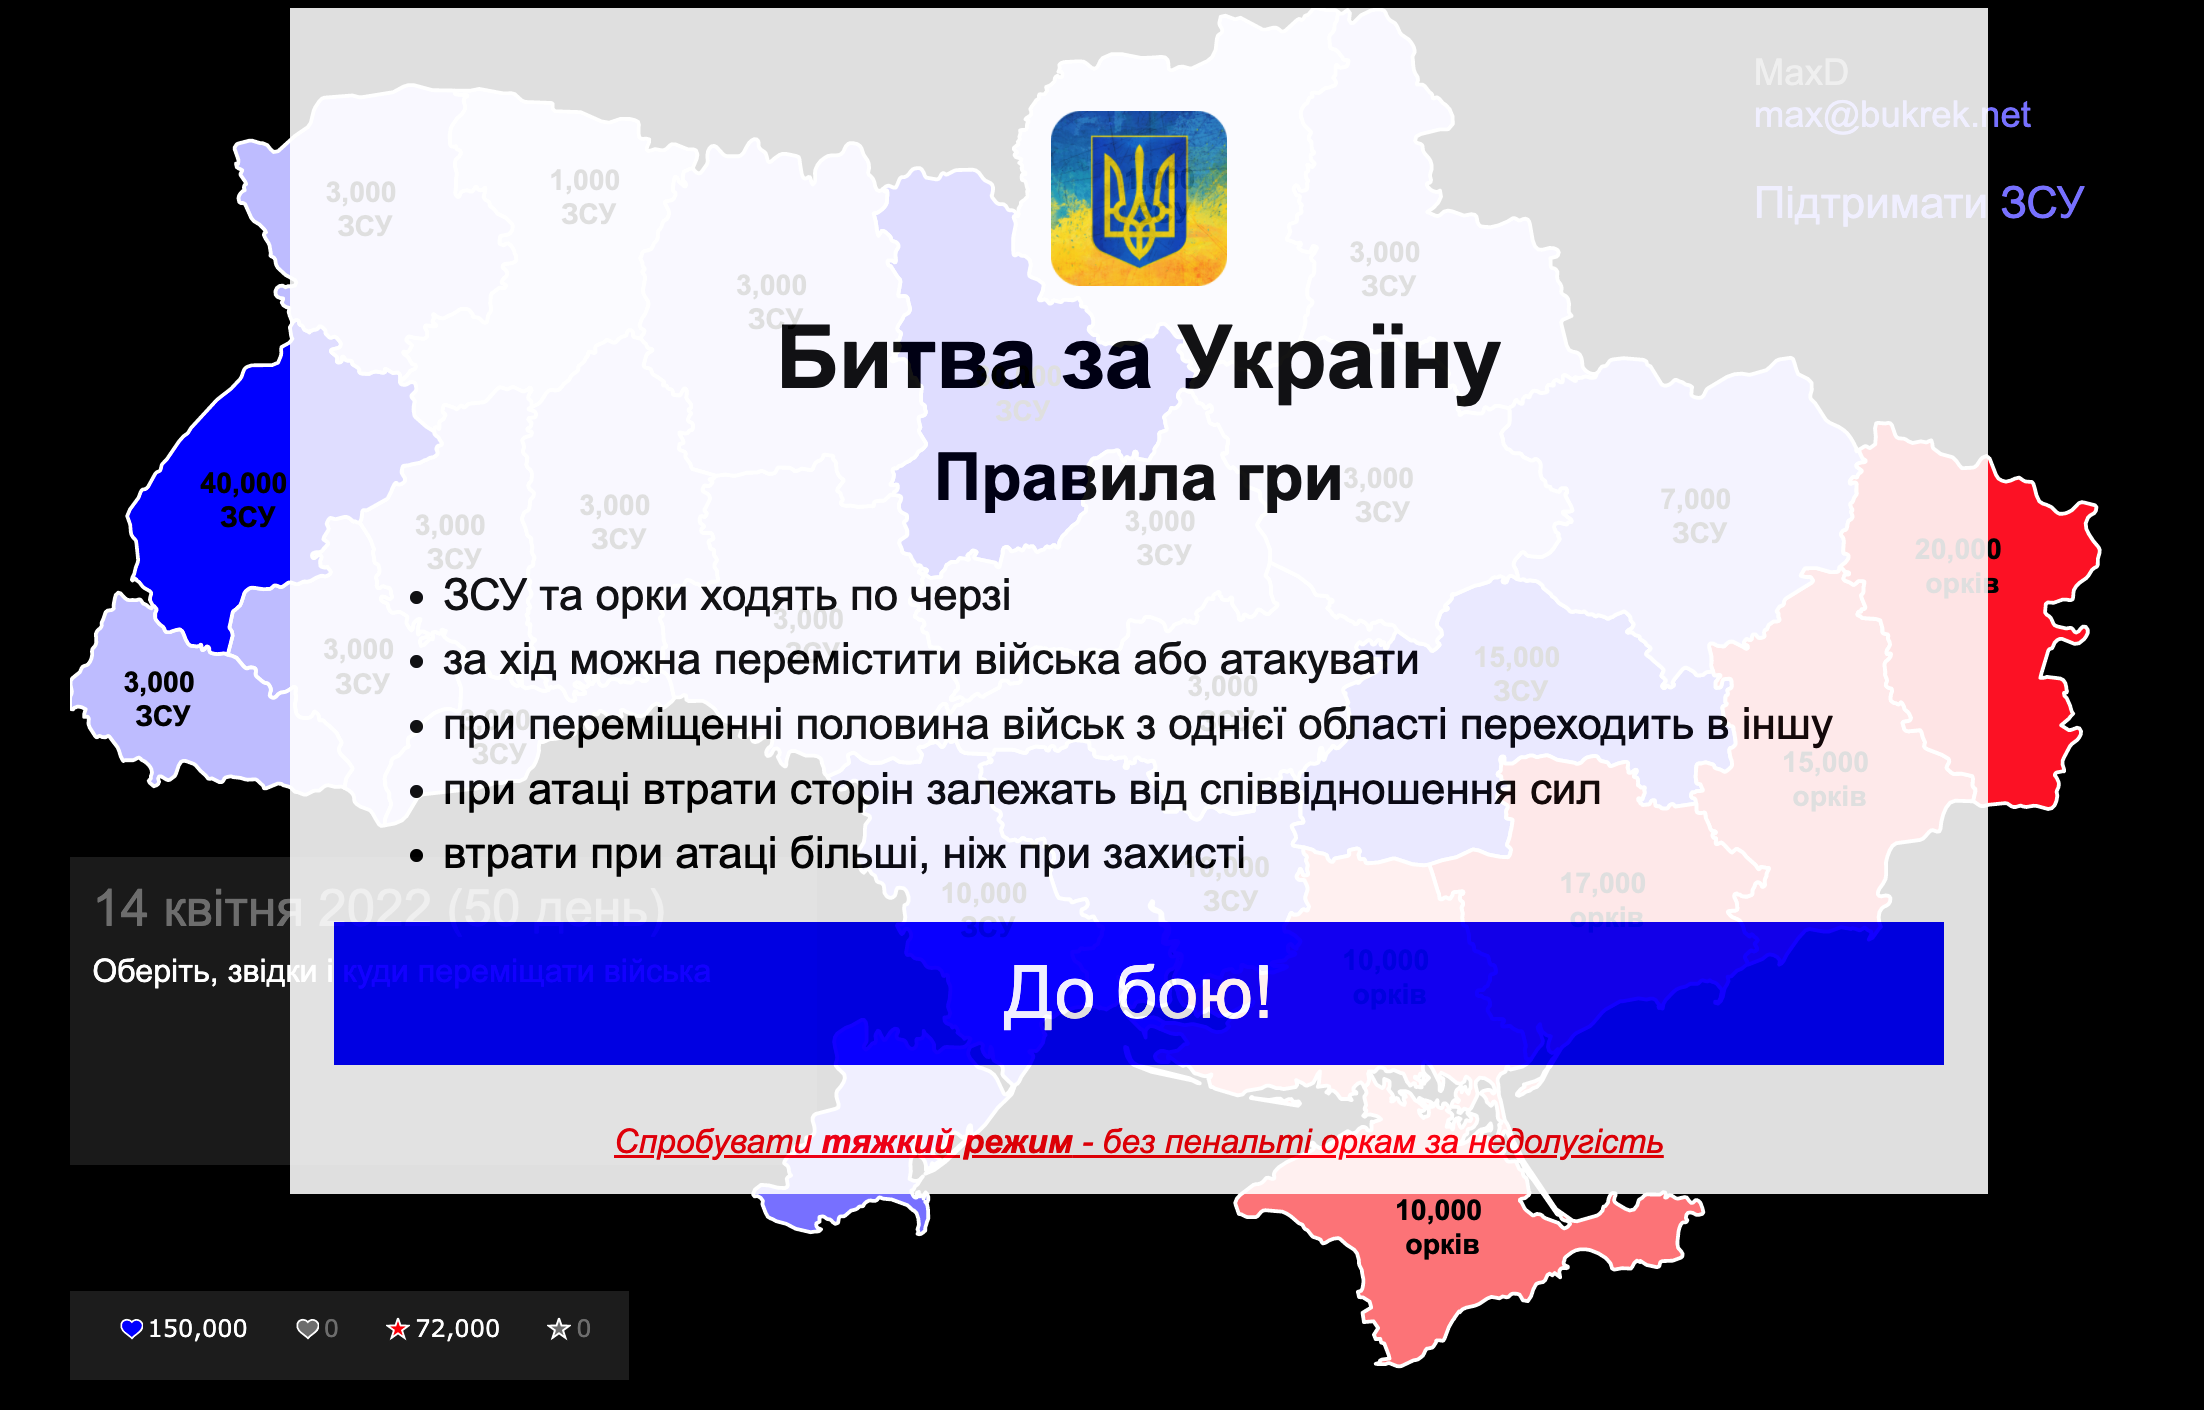 «Битва за Україну»